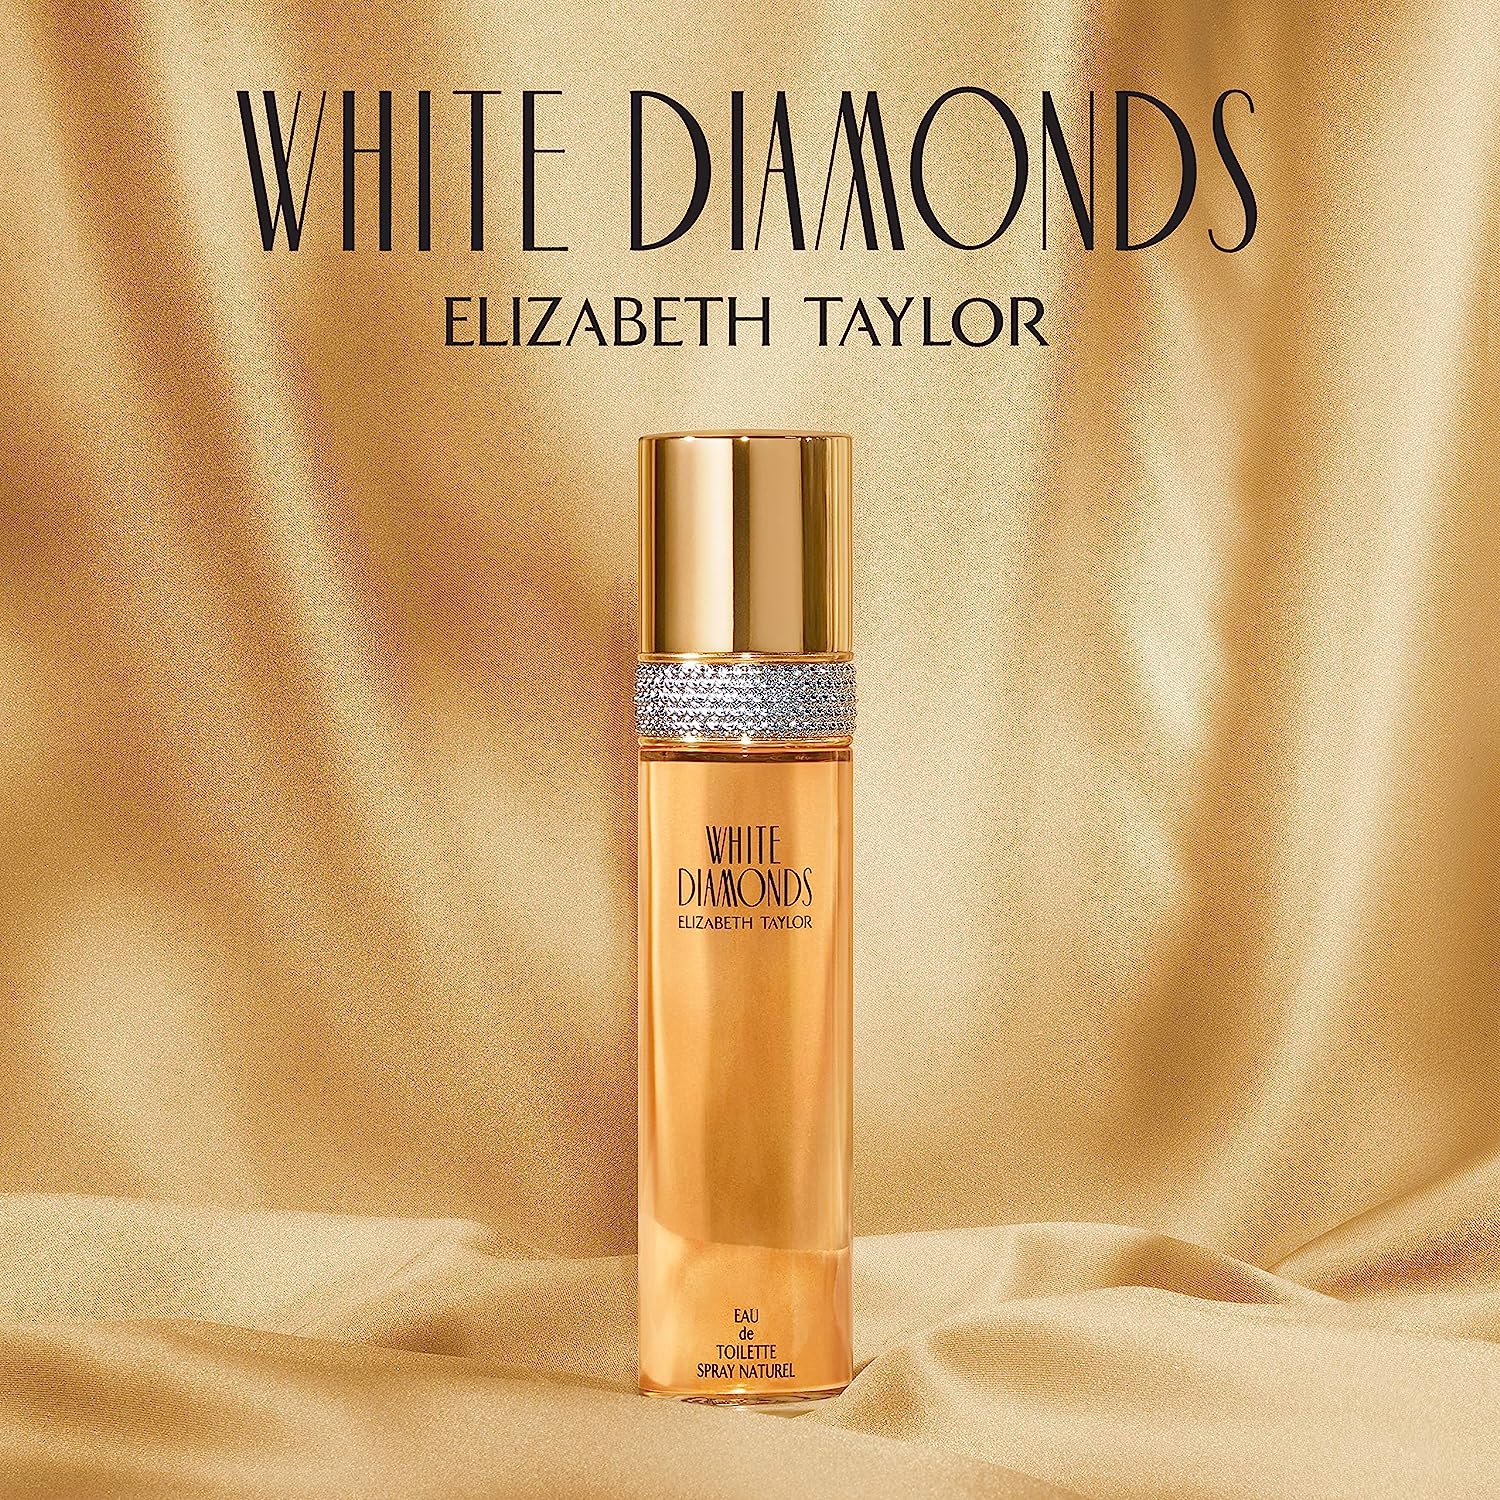 WHITE DIAMONDS by ELIZABETH TAYLOR Eau De Toilette